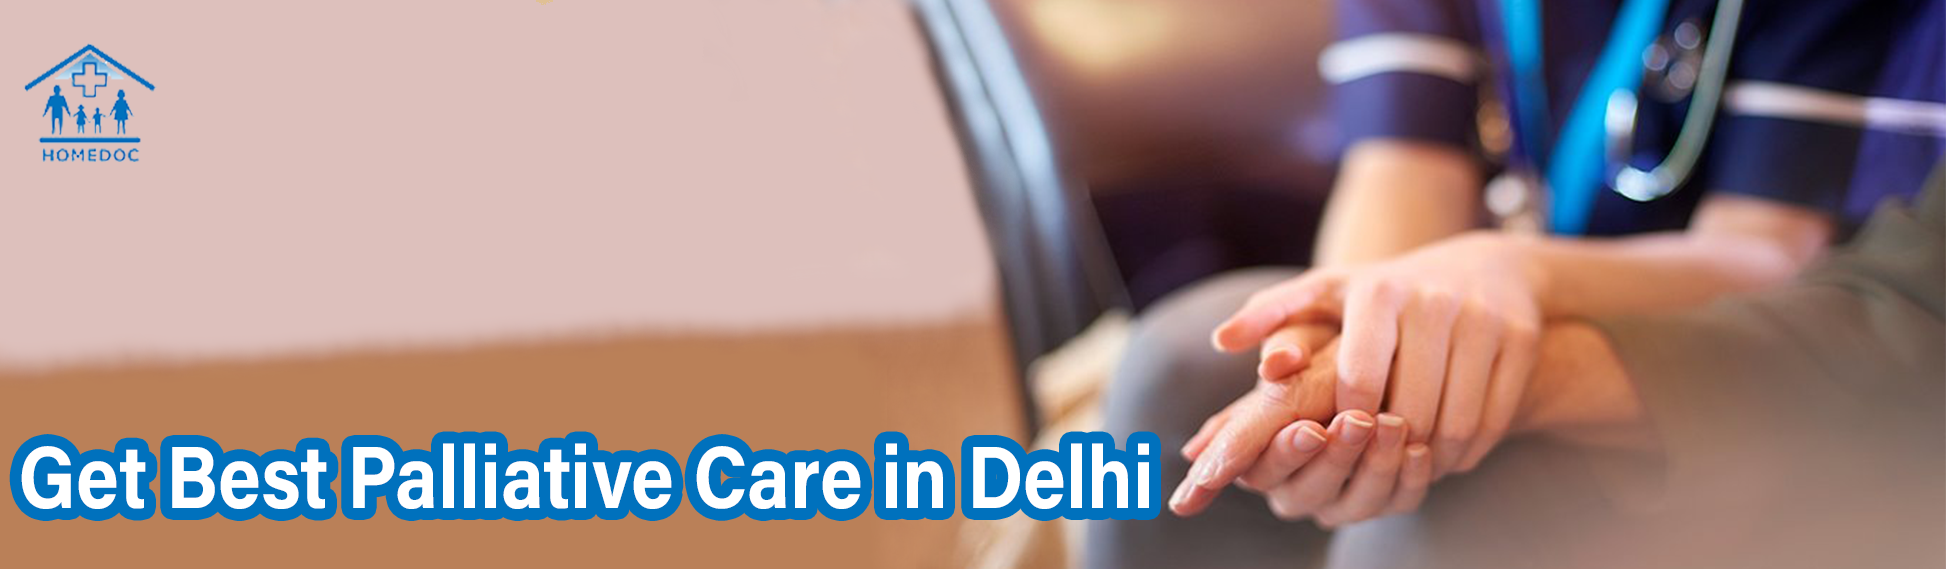 Best Palliative Care in Delhi